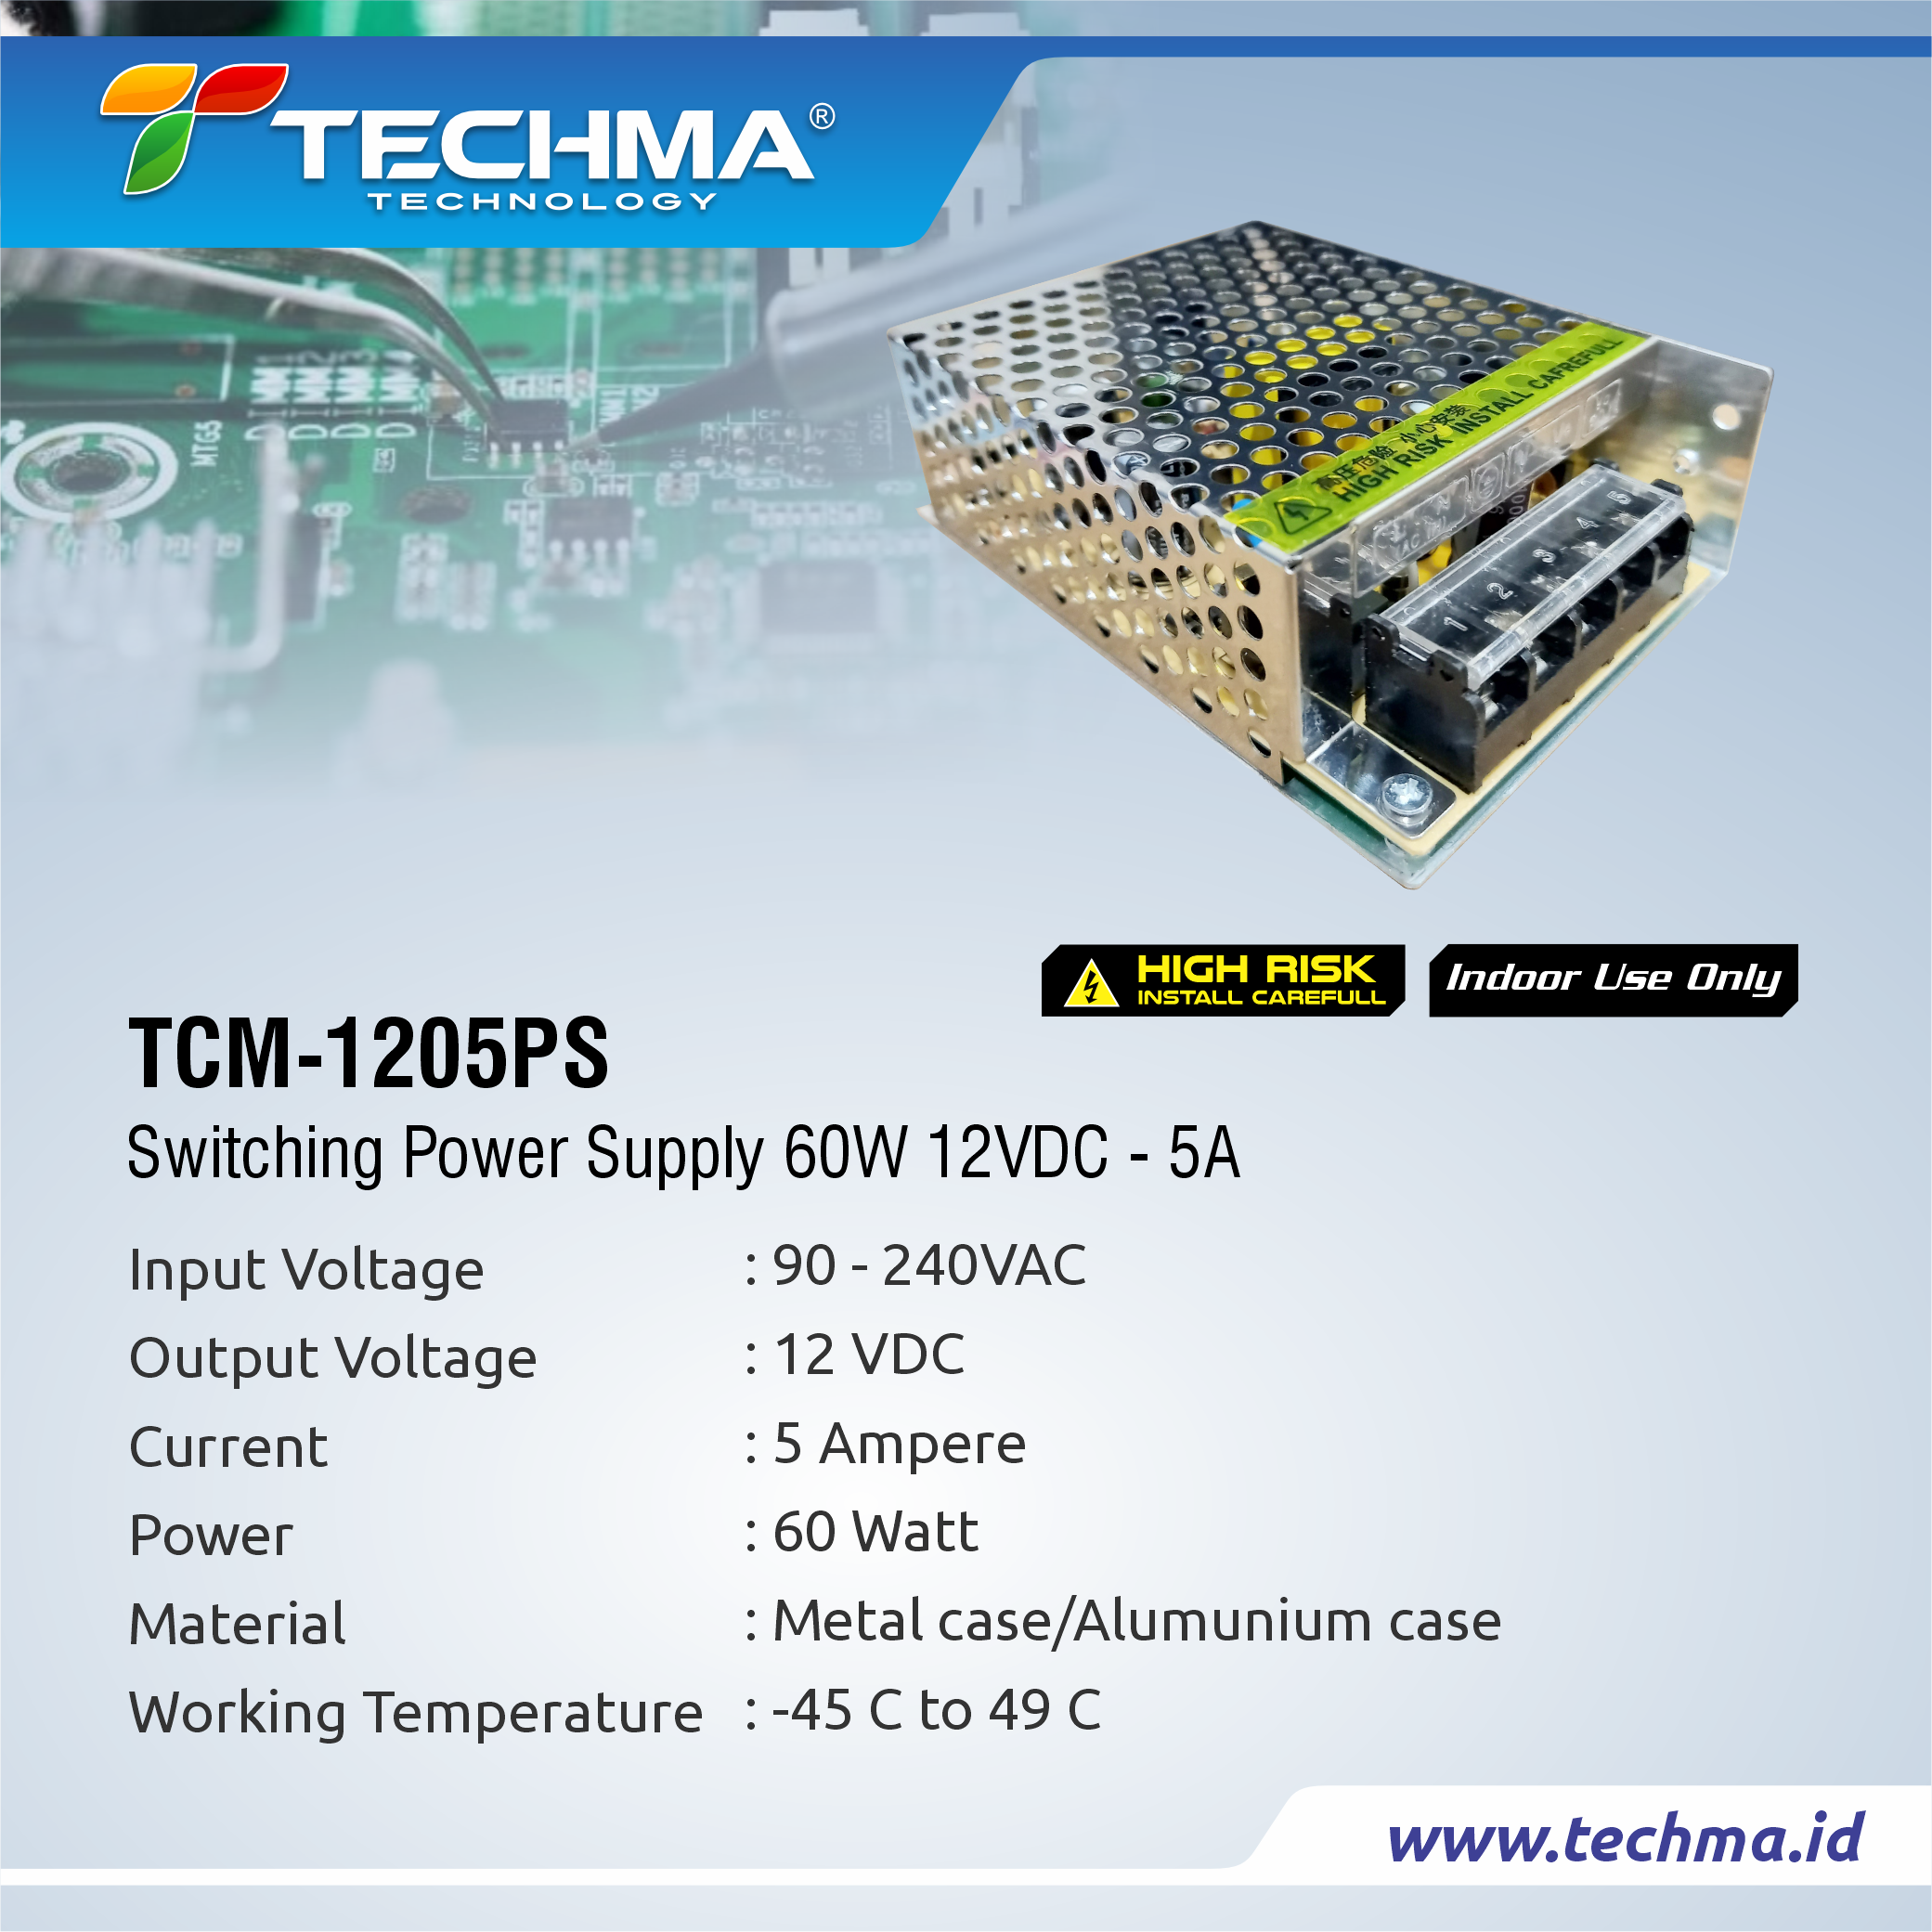 TCM-1205PS web 2